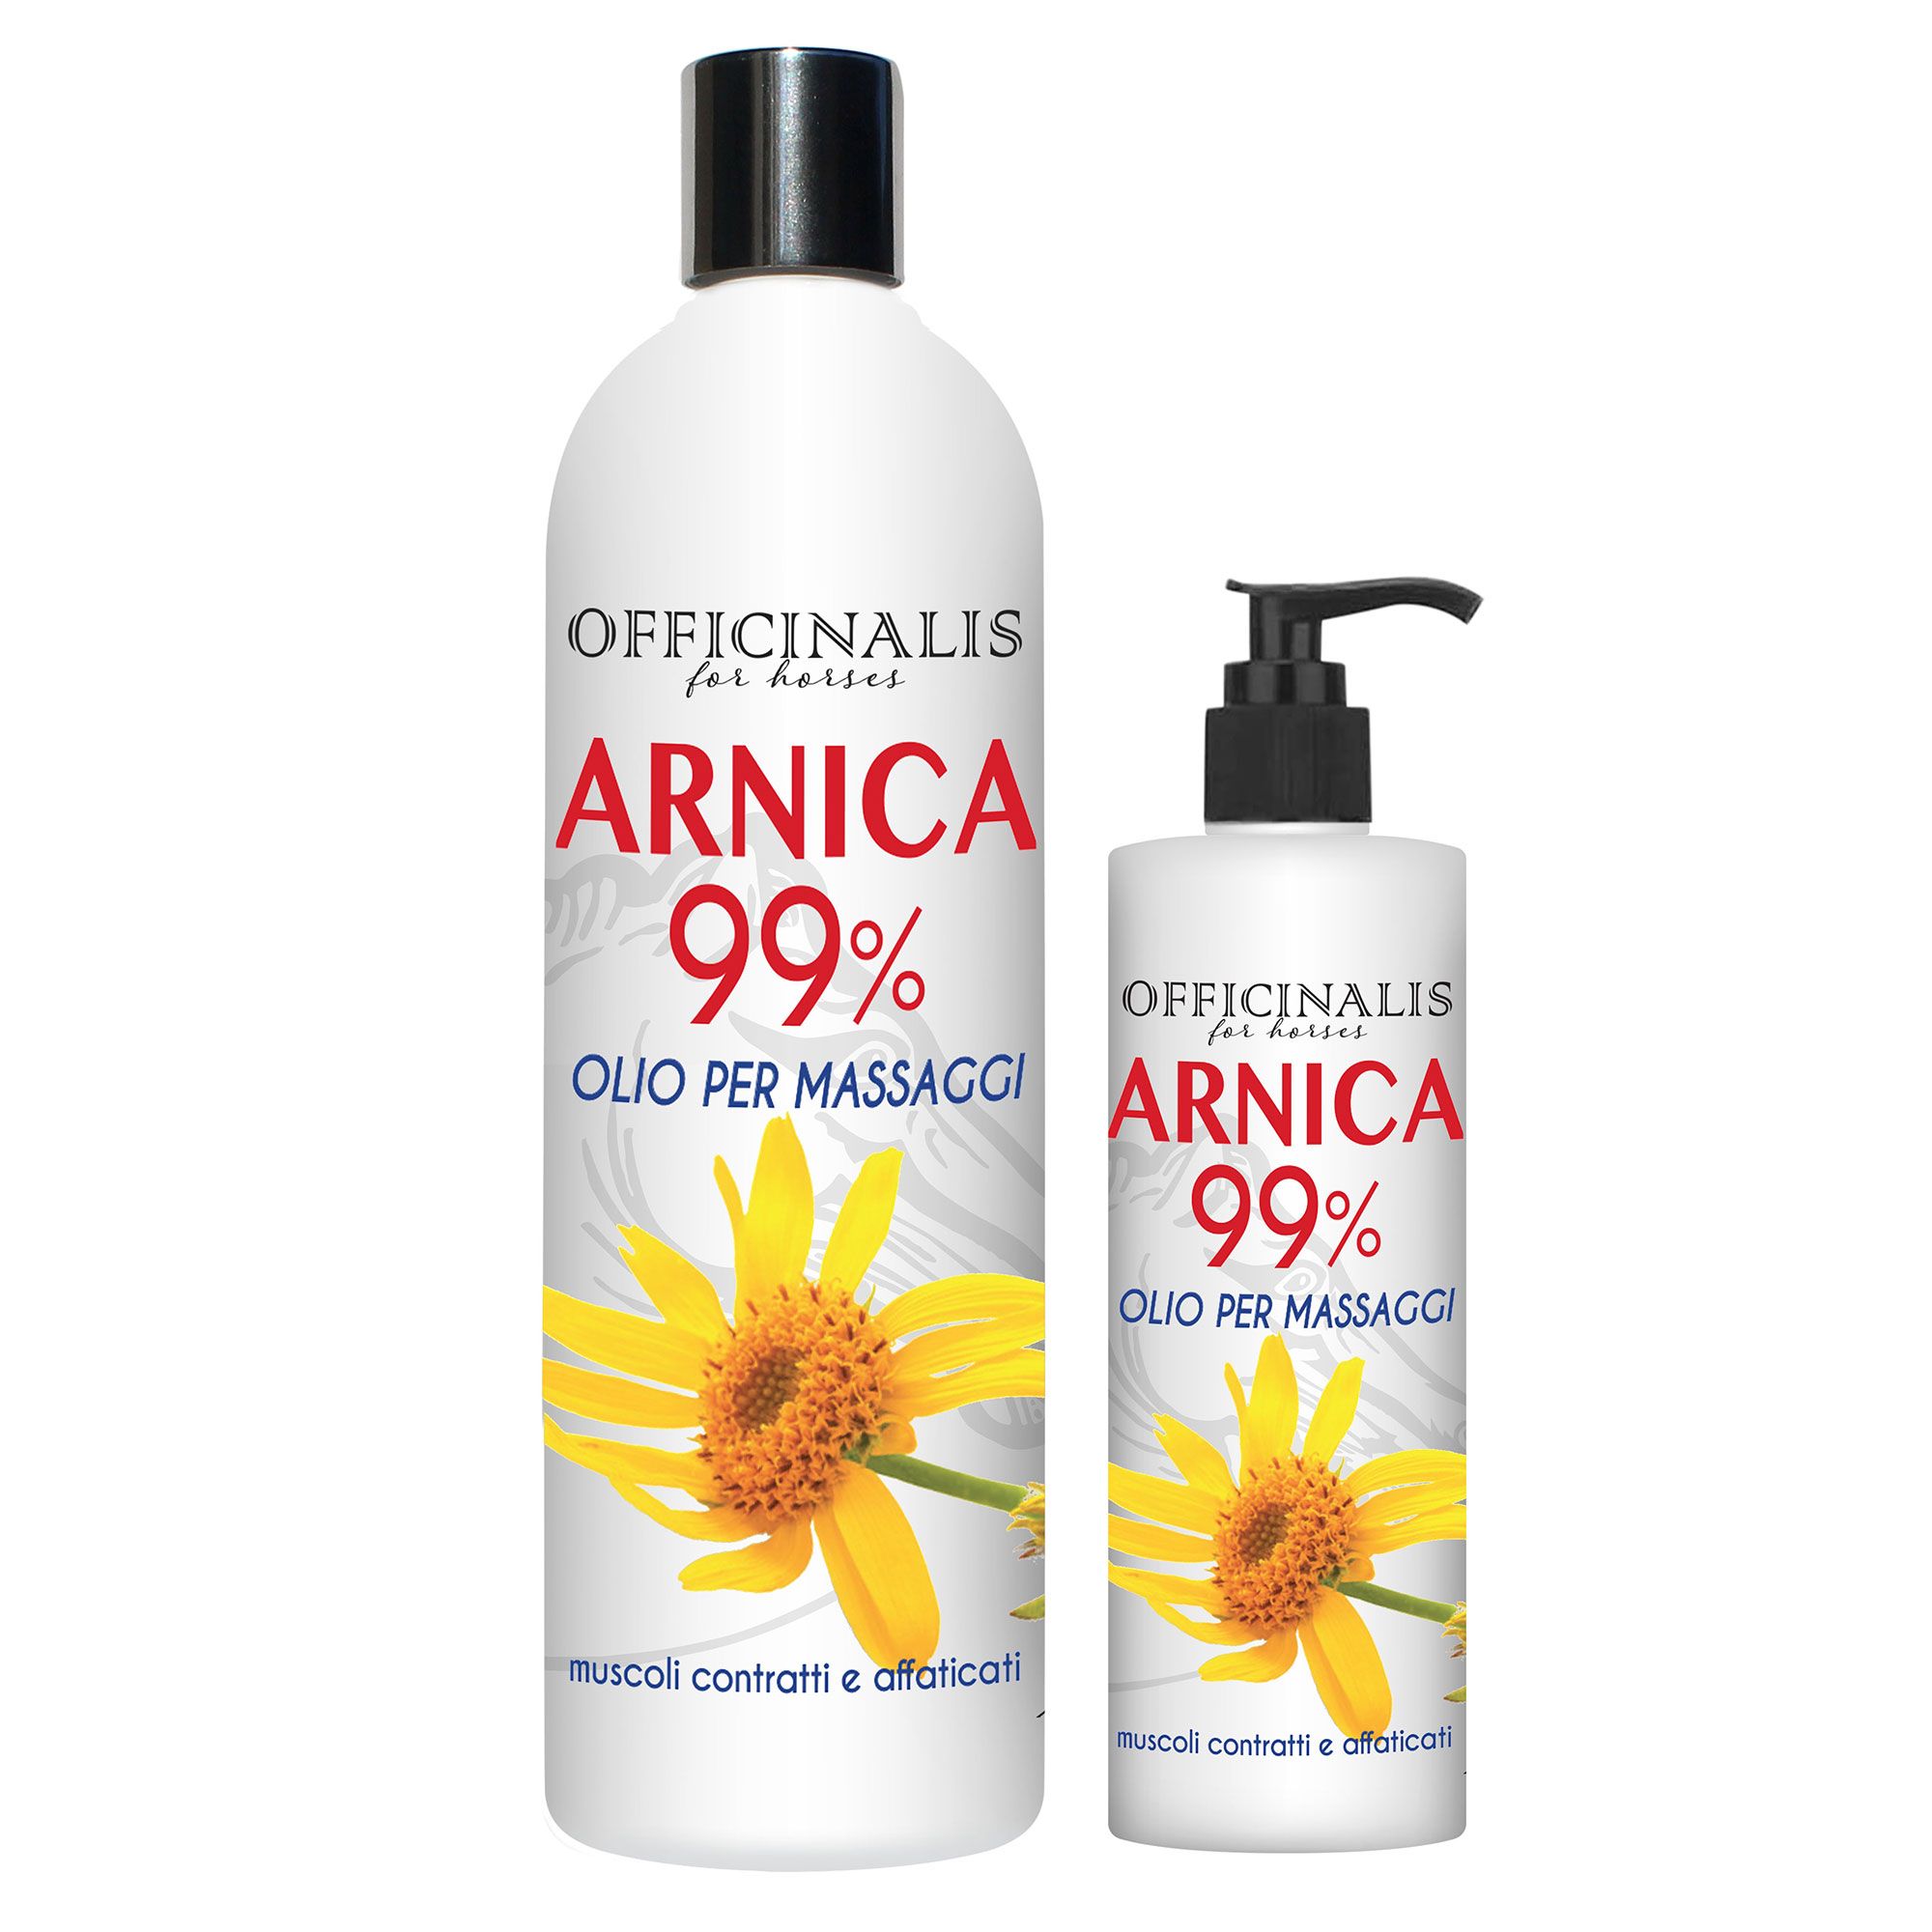 Officinalis Arnica 90% Gel 